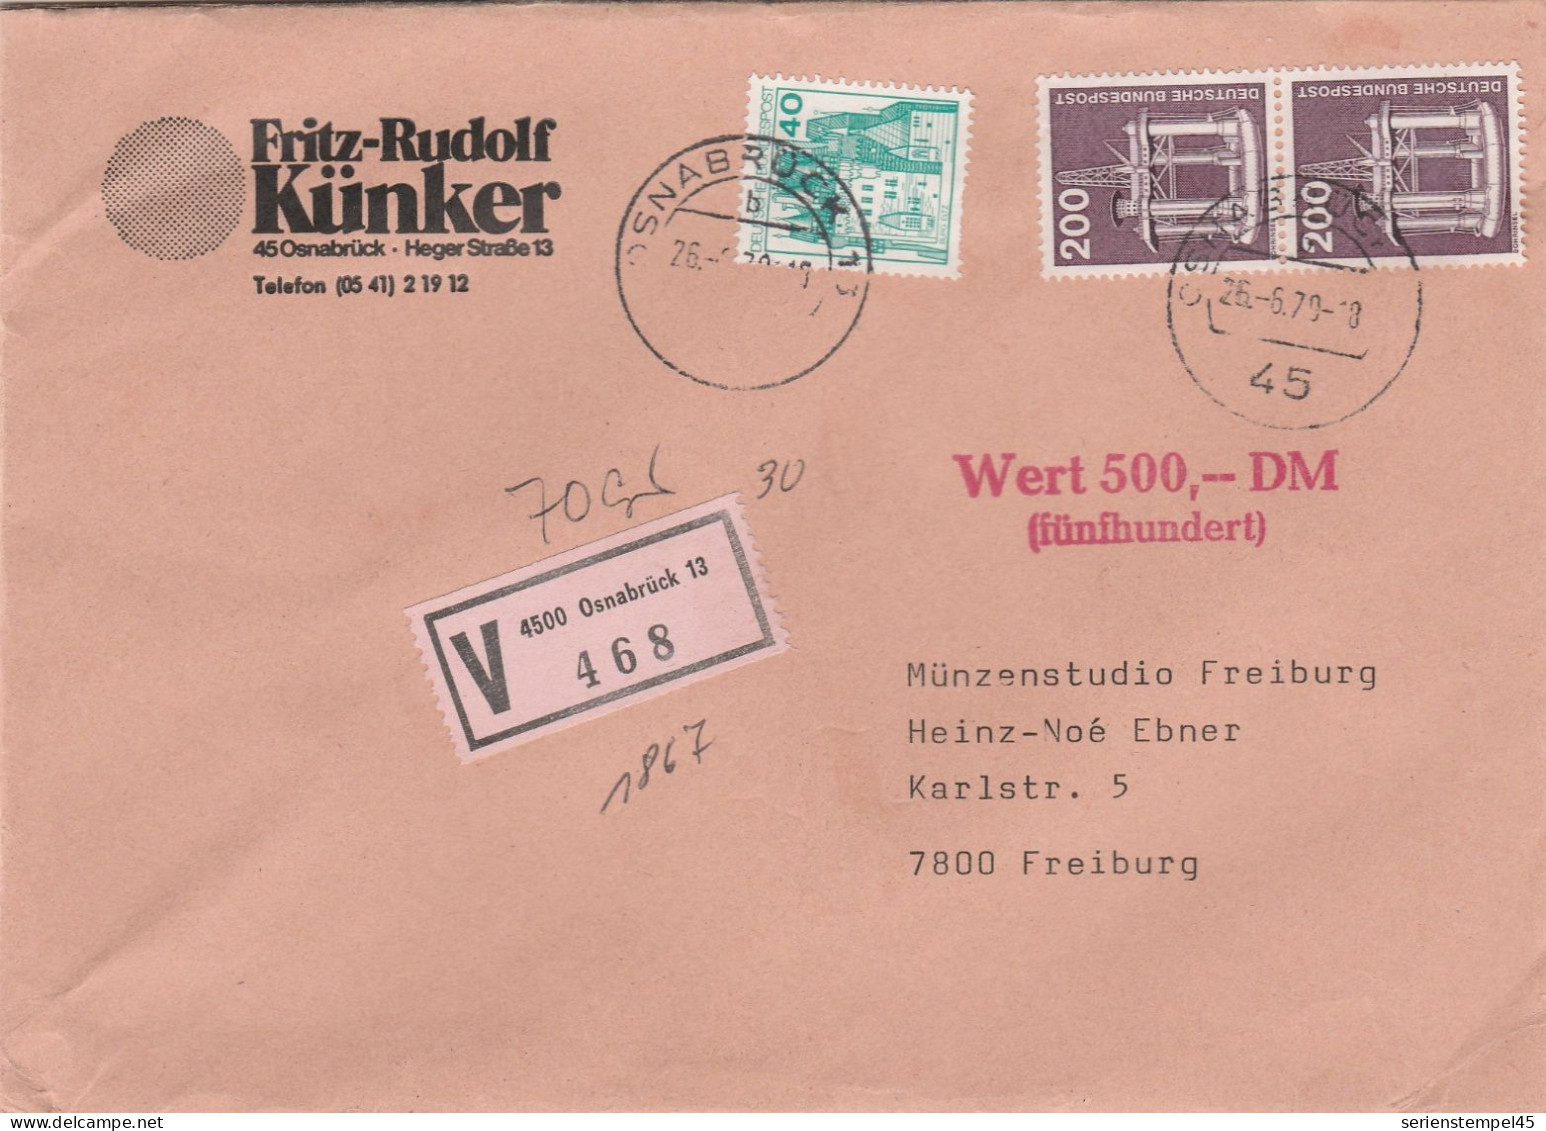 Bund Wertbrief 500 DM Mit V Zettel 4500 Osnabrück 13 Porto 4,40 DM 1979 - R- & V- Vignetten